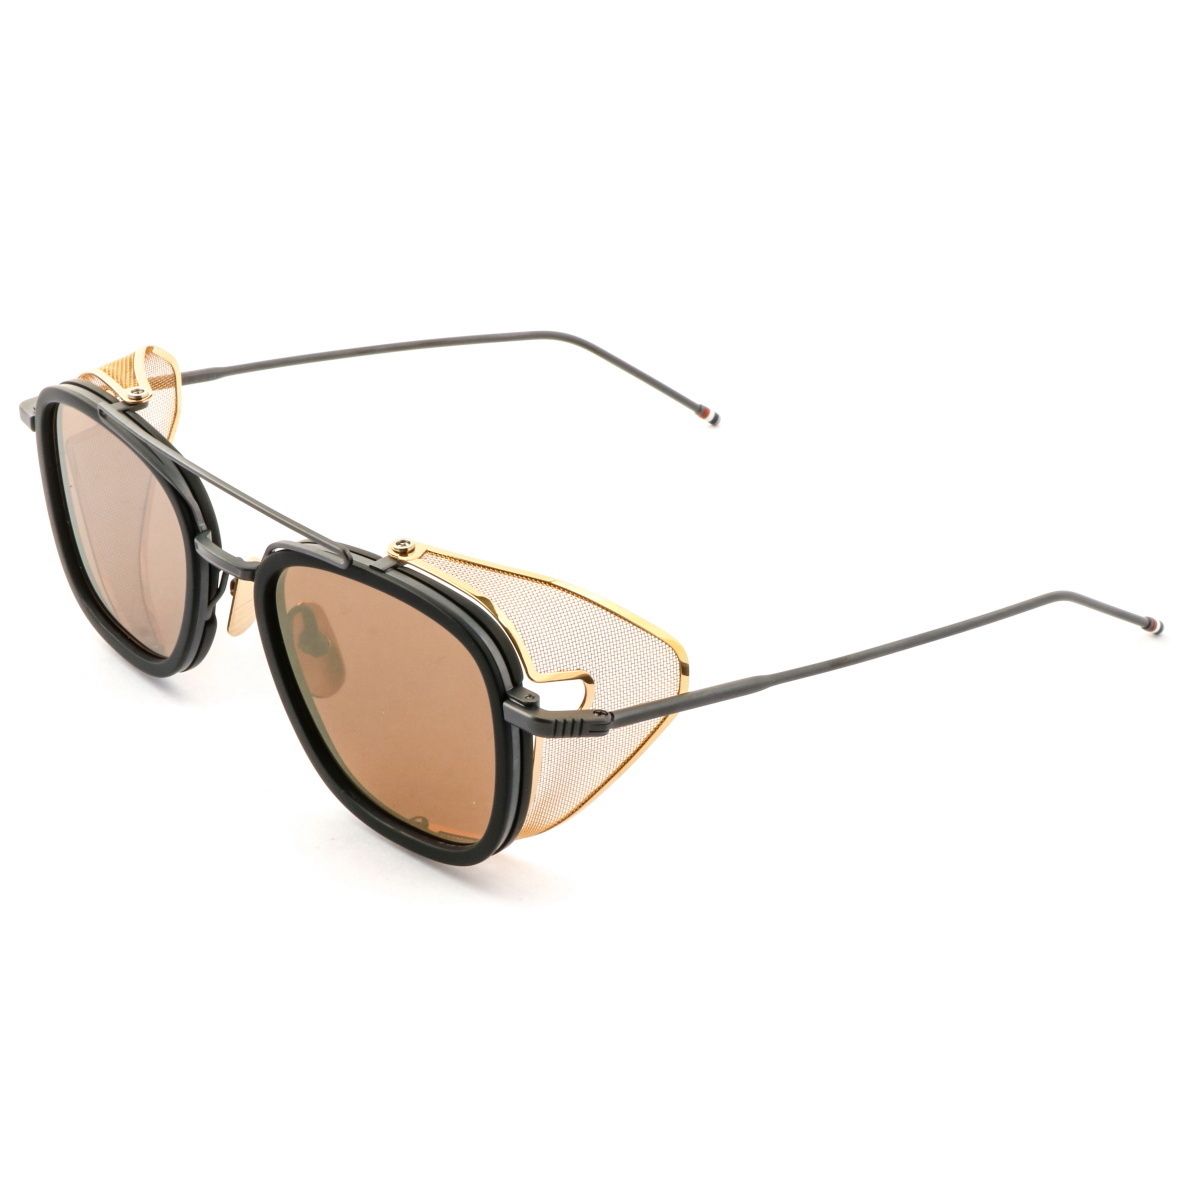 808 Square Sunglasses 3 - size 51